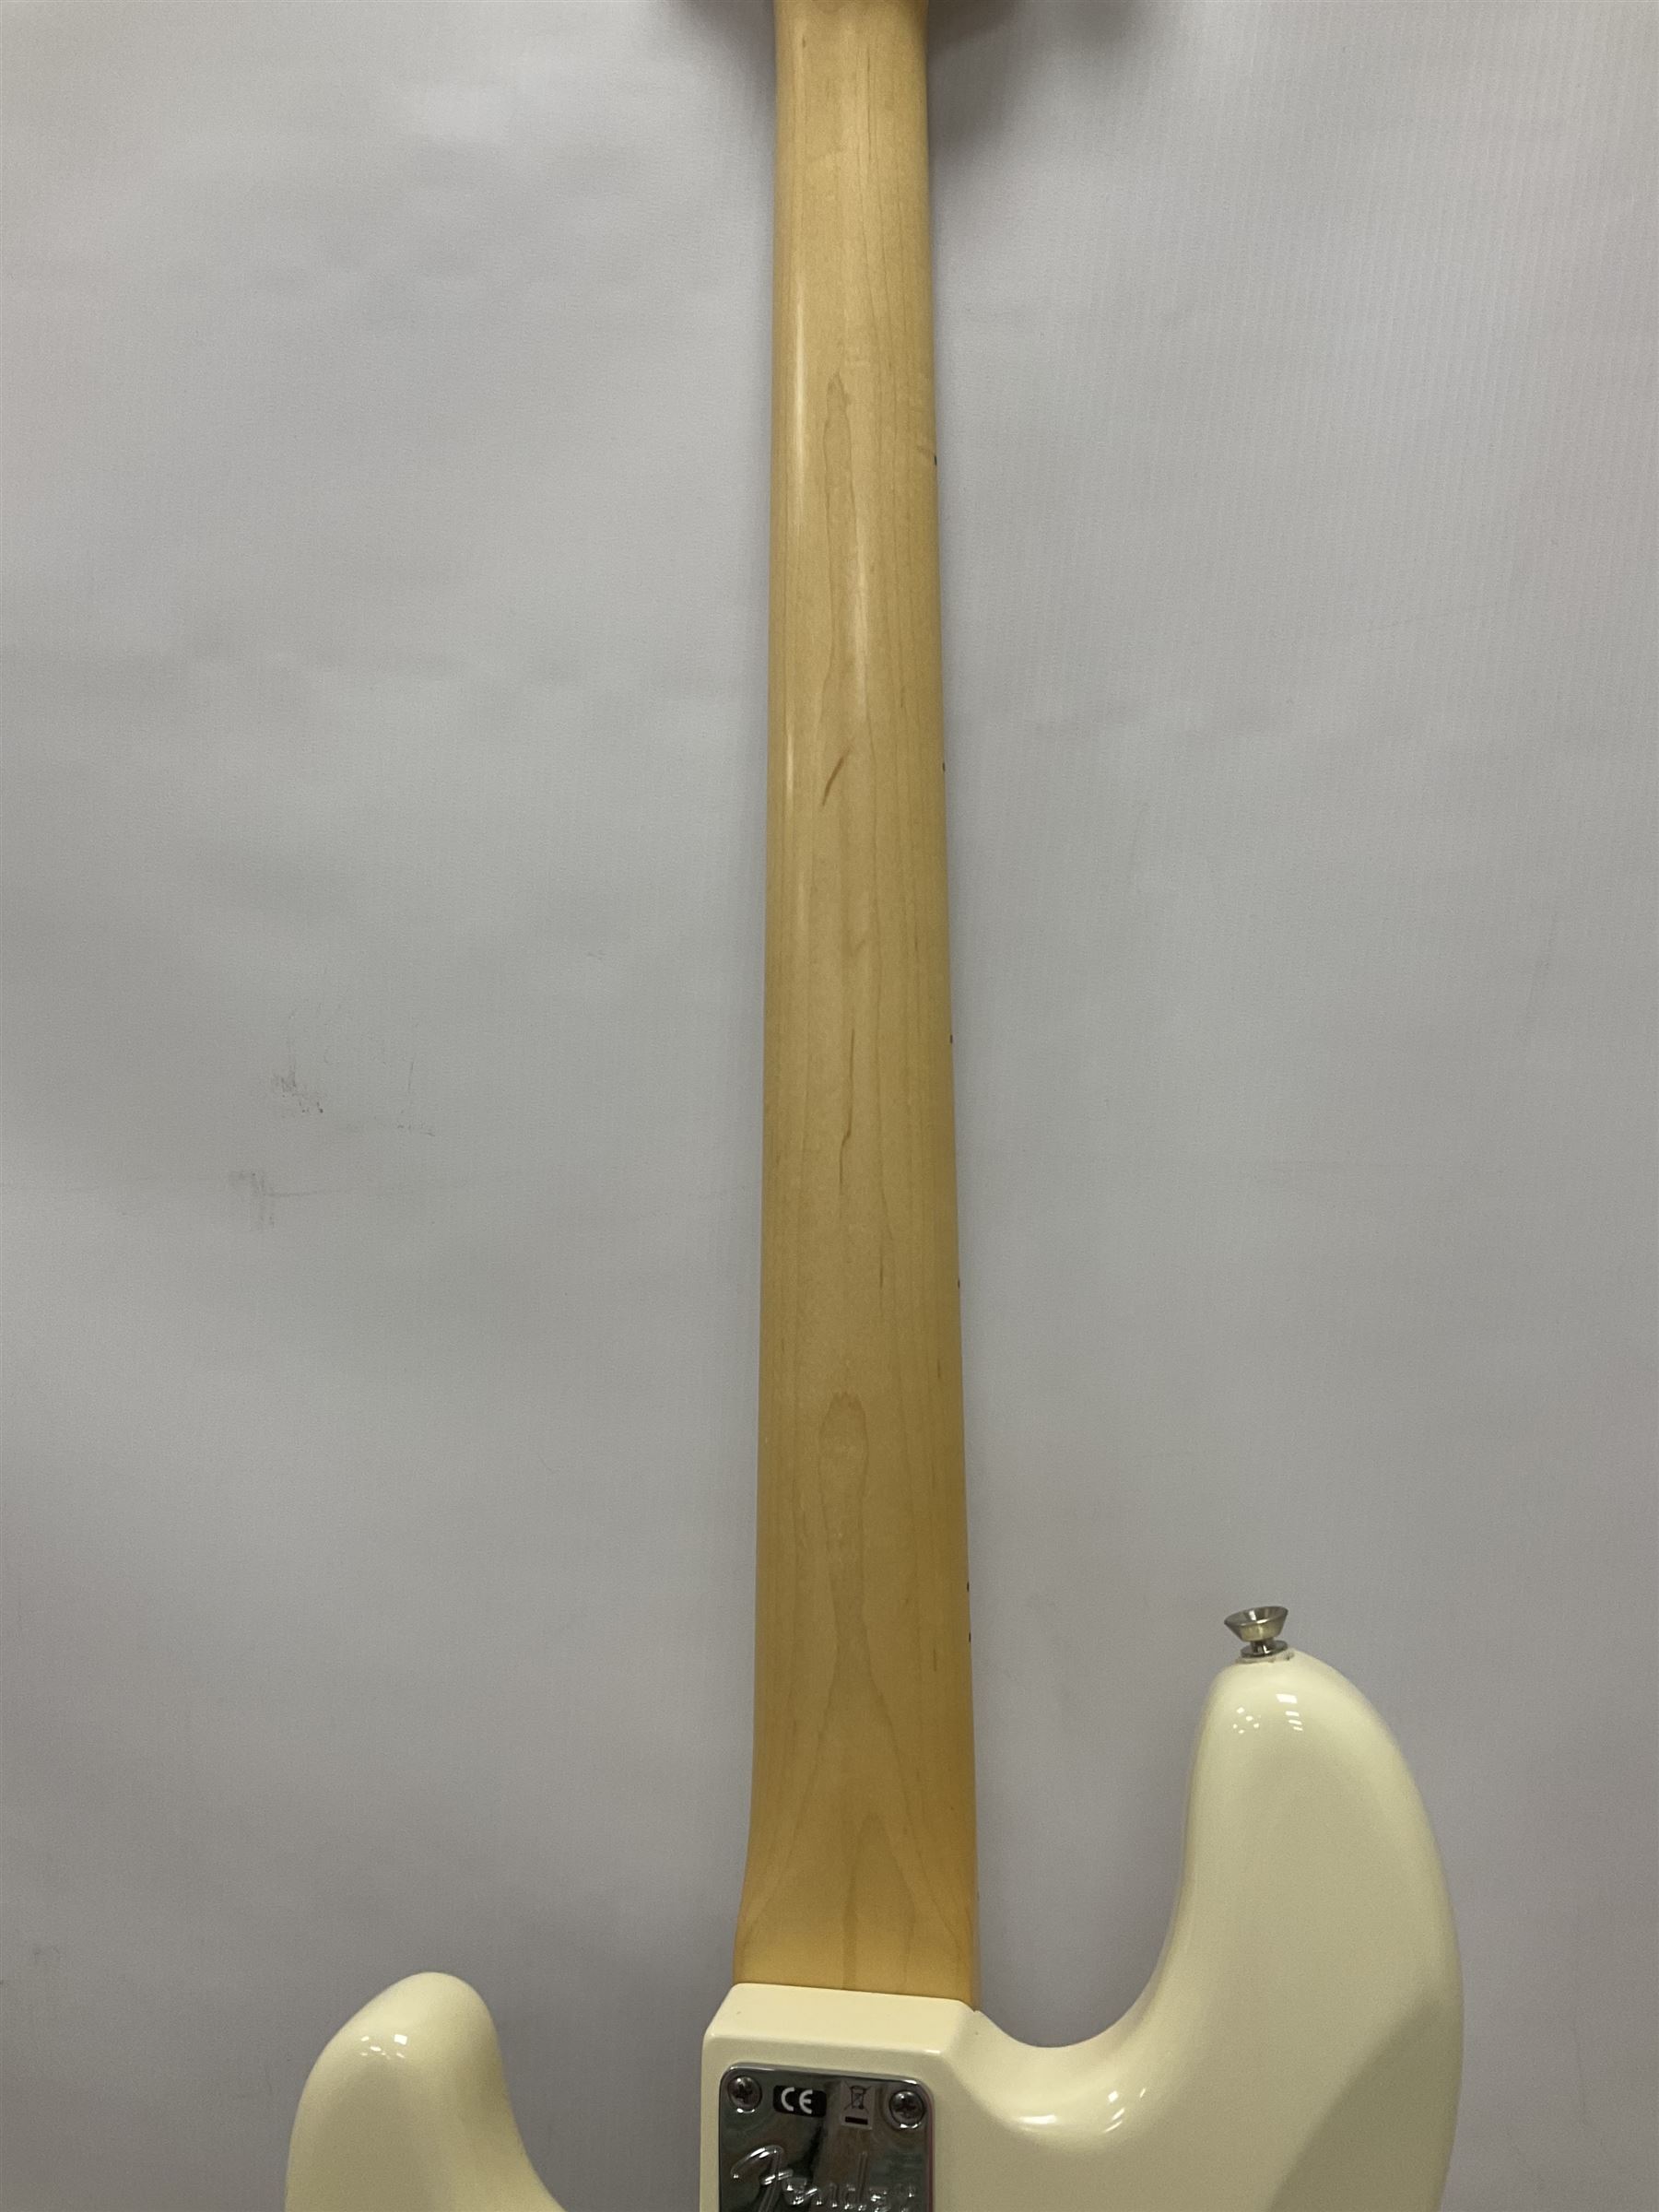 Fender Precision Bass guitar - Image 21 of 26